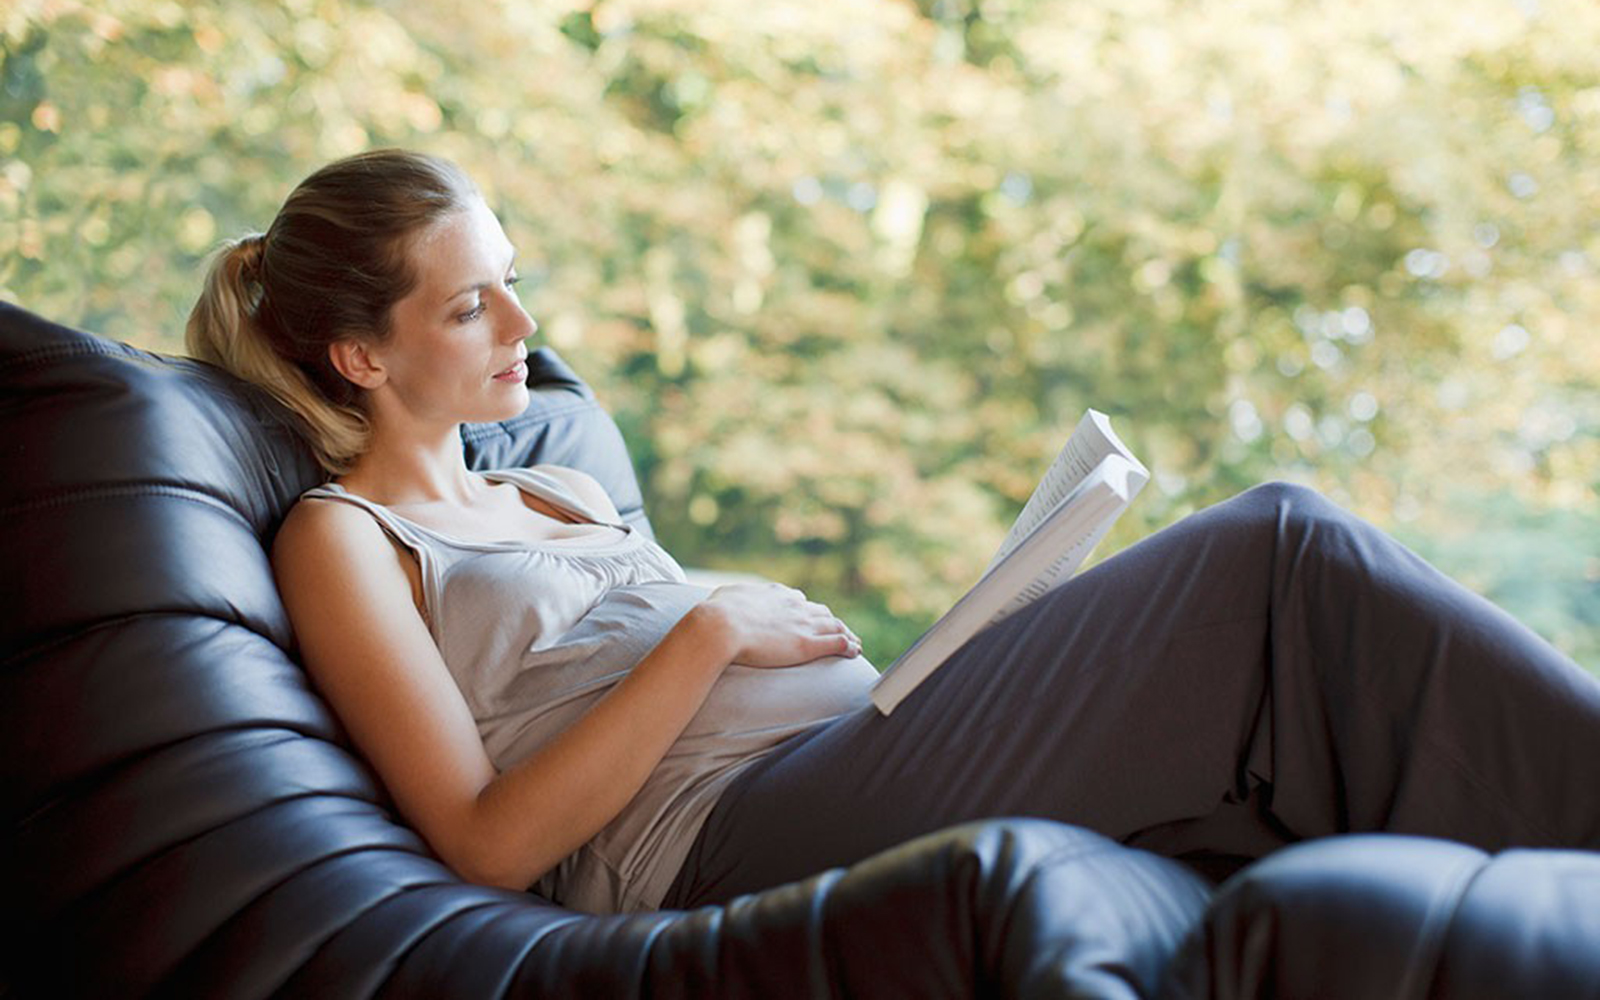 Căng thẳng khi mang thai sẽ được giải tỏa qua những trang sách